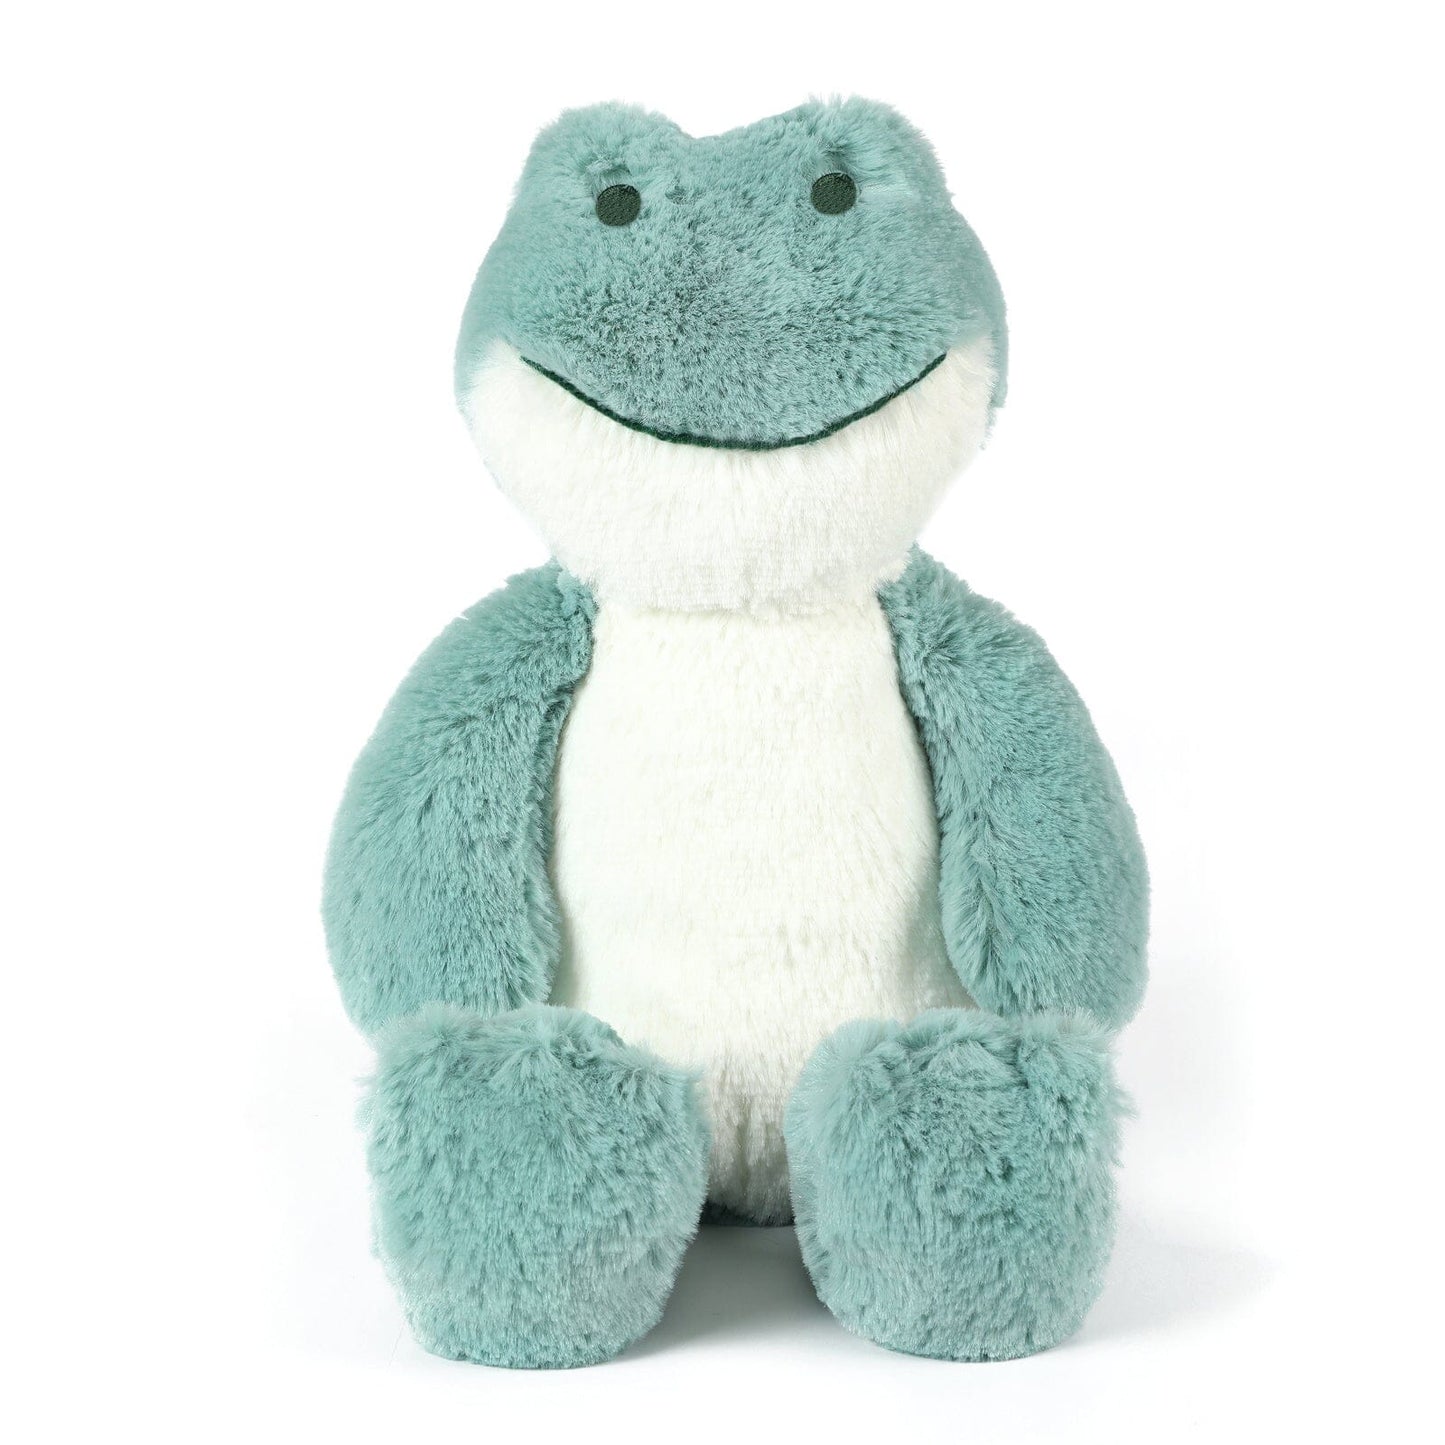 OB Designs Freddy Frog Soft Toy